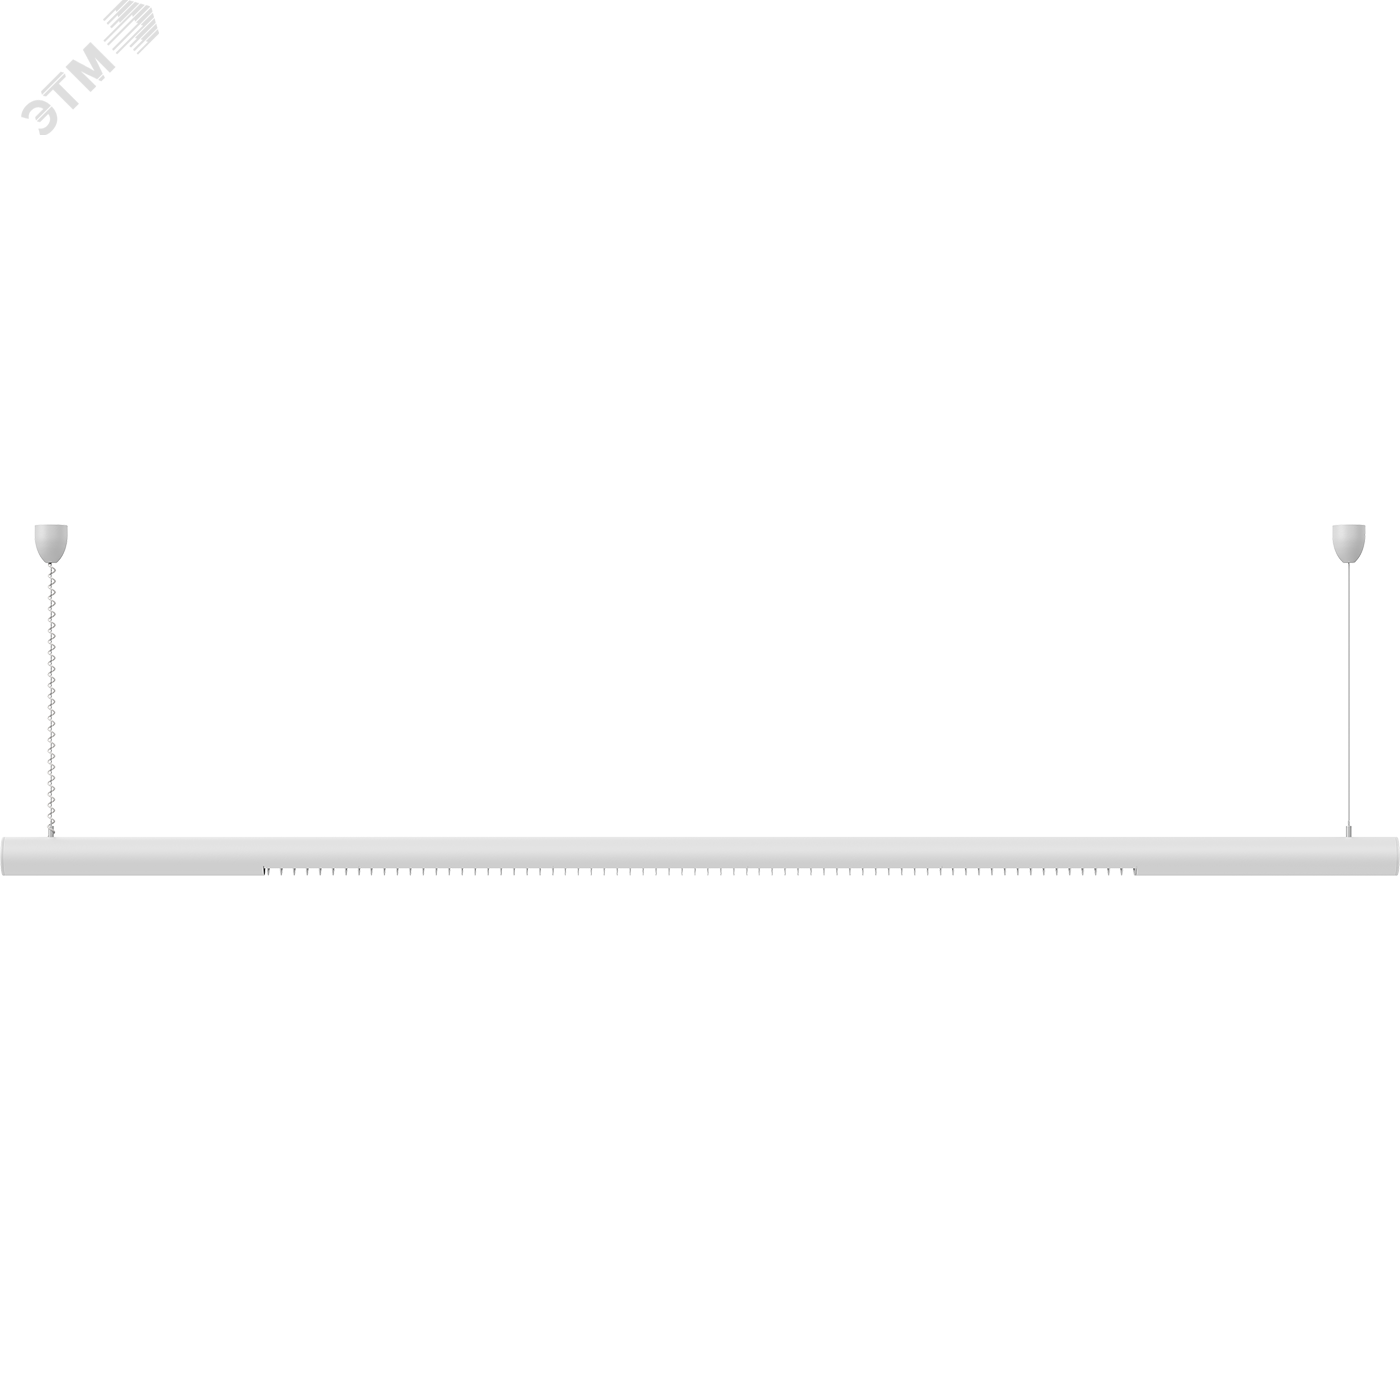 Светильник RING 1x58 HF подвесной круглый профиль с ЭПРА 1303000170 Световые Технологии - превью 7